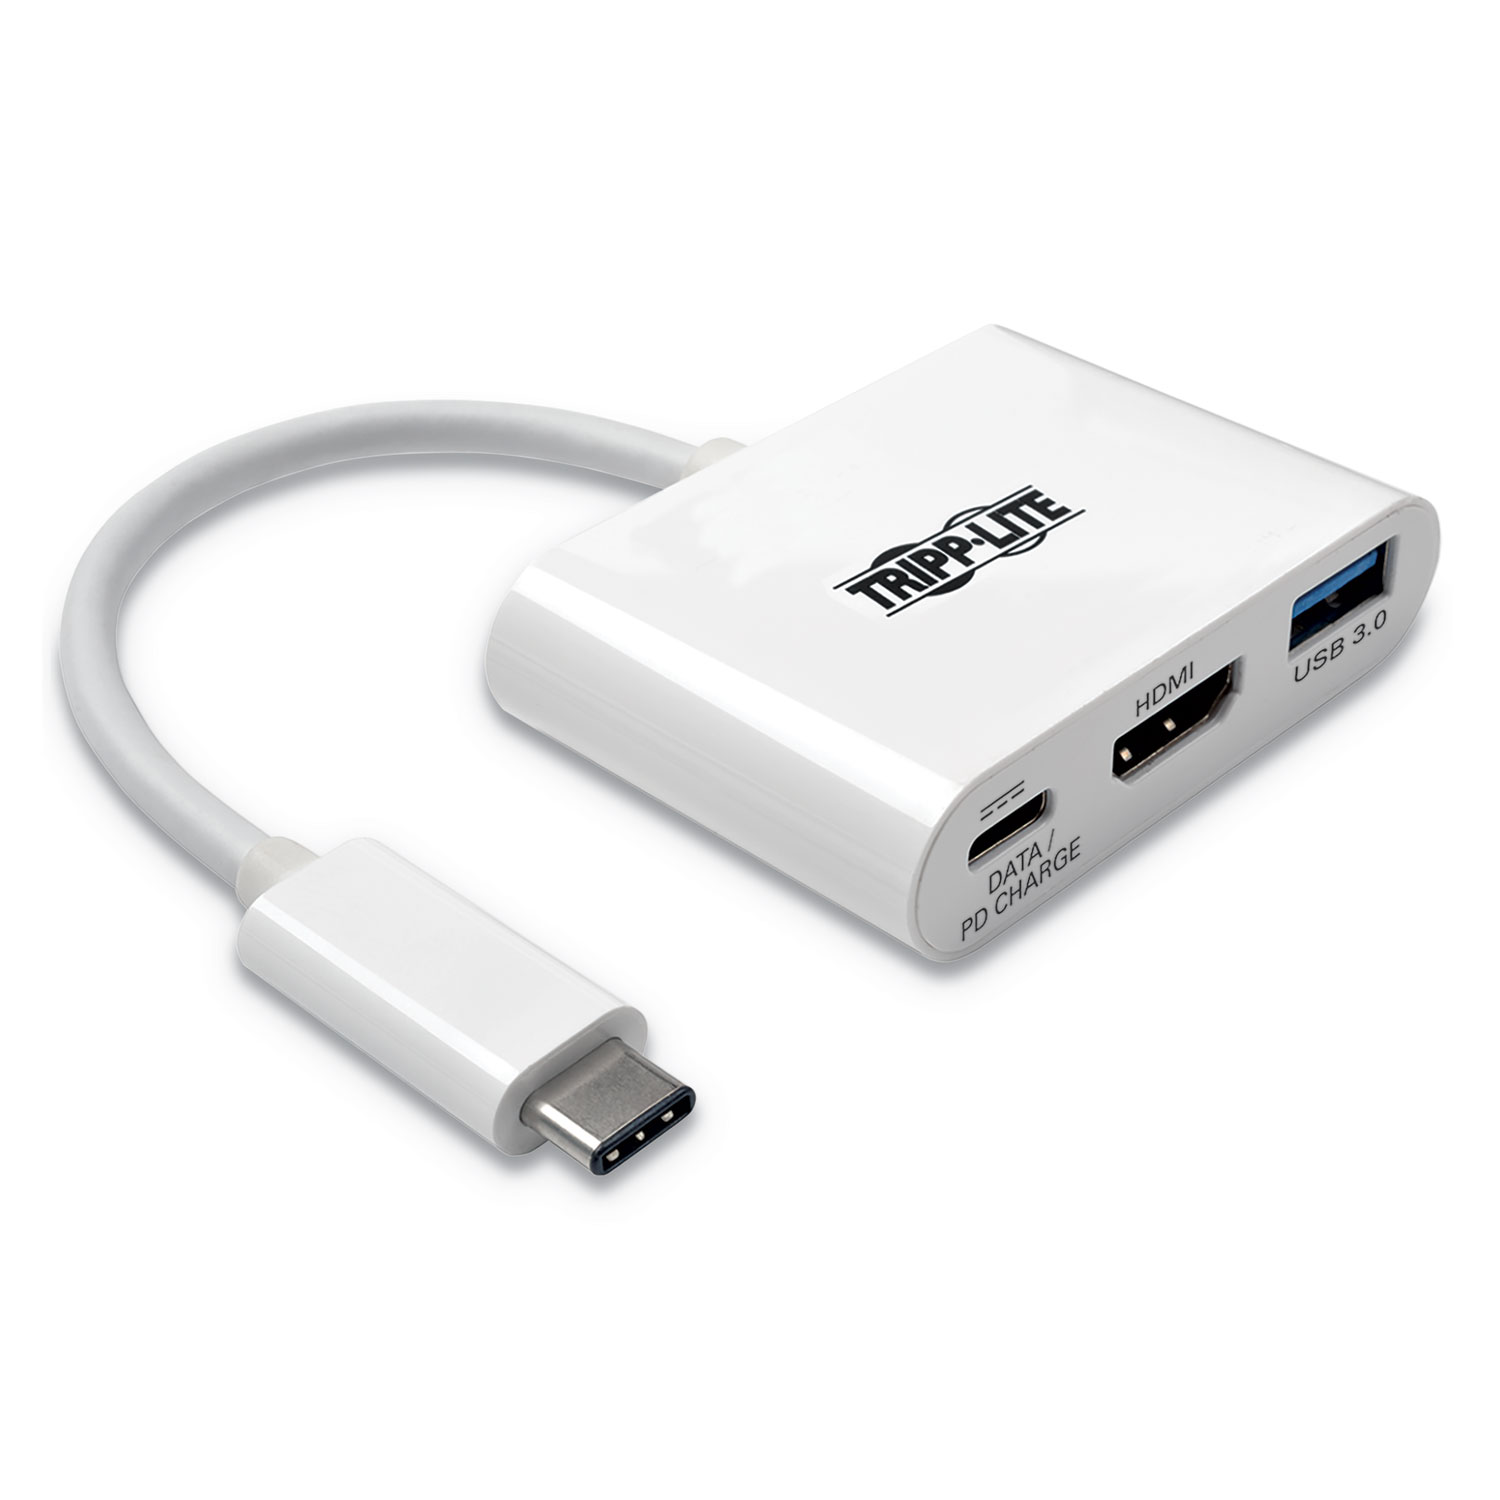 USB 3.1 Gen 1 USB-C to HDMI 4K Adapter, USB-A/USB-C PD Charging Ports